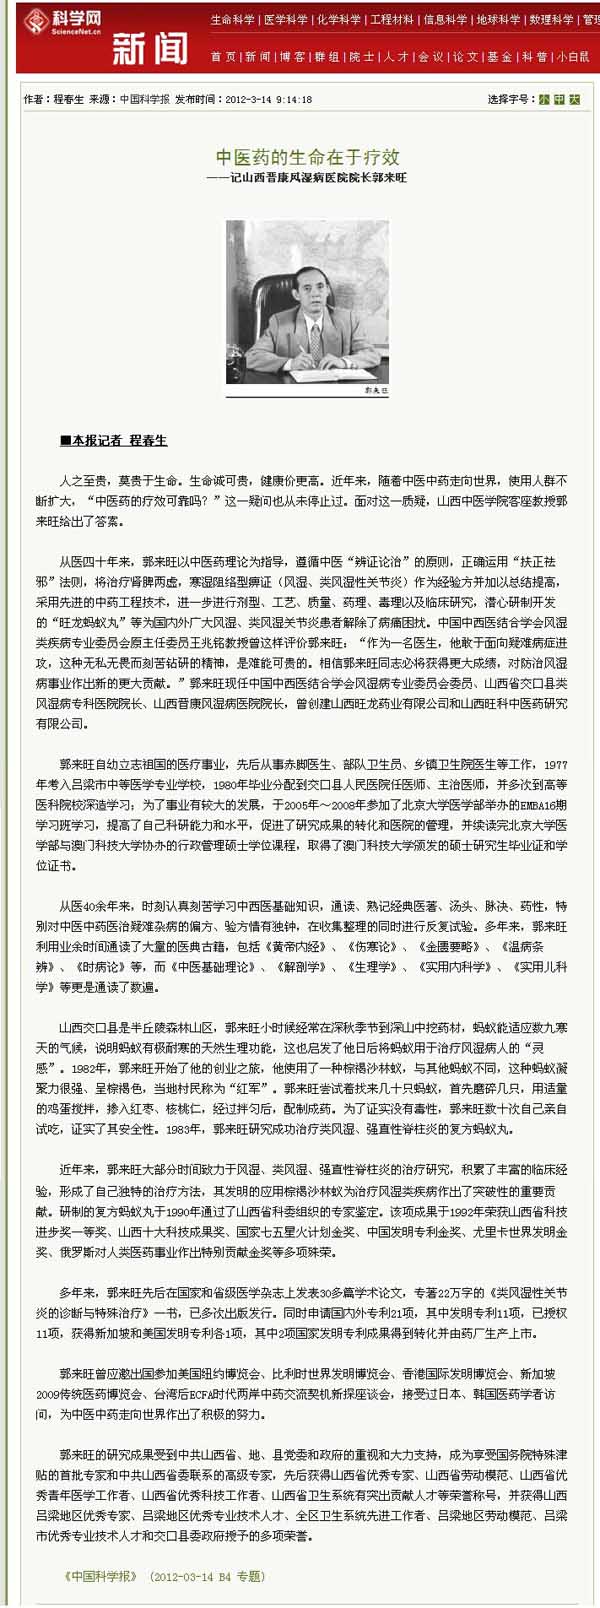 【中国科学报】中医药的生命在于疗效—记山西晋康风湿病医院院长郭来旺